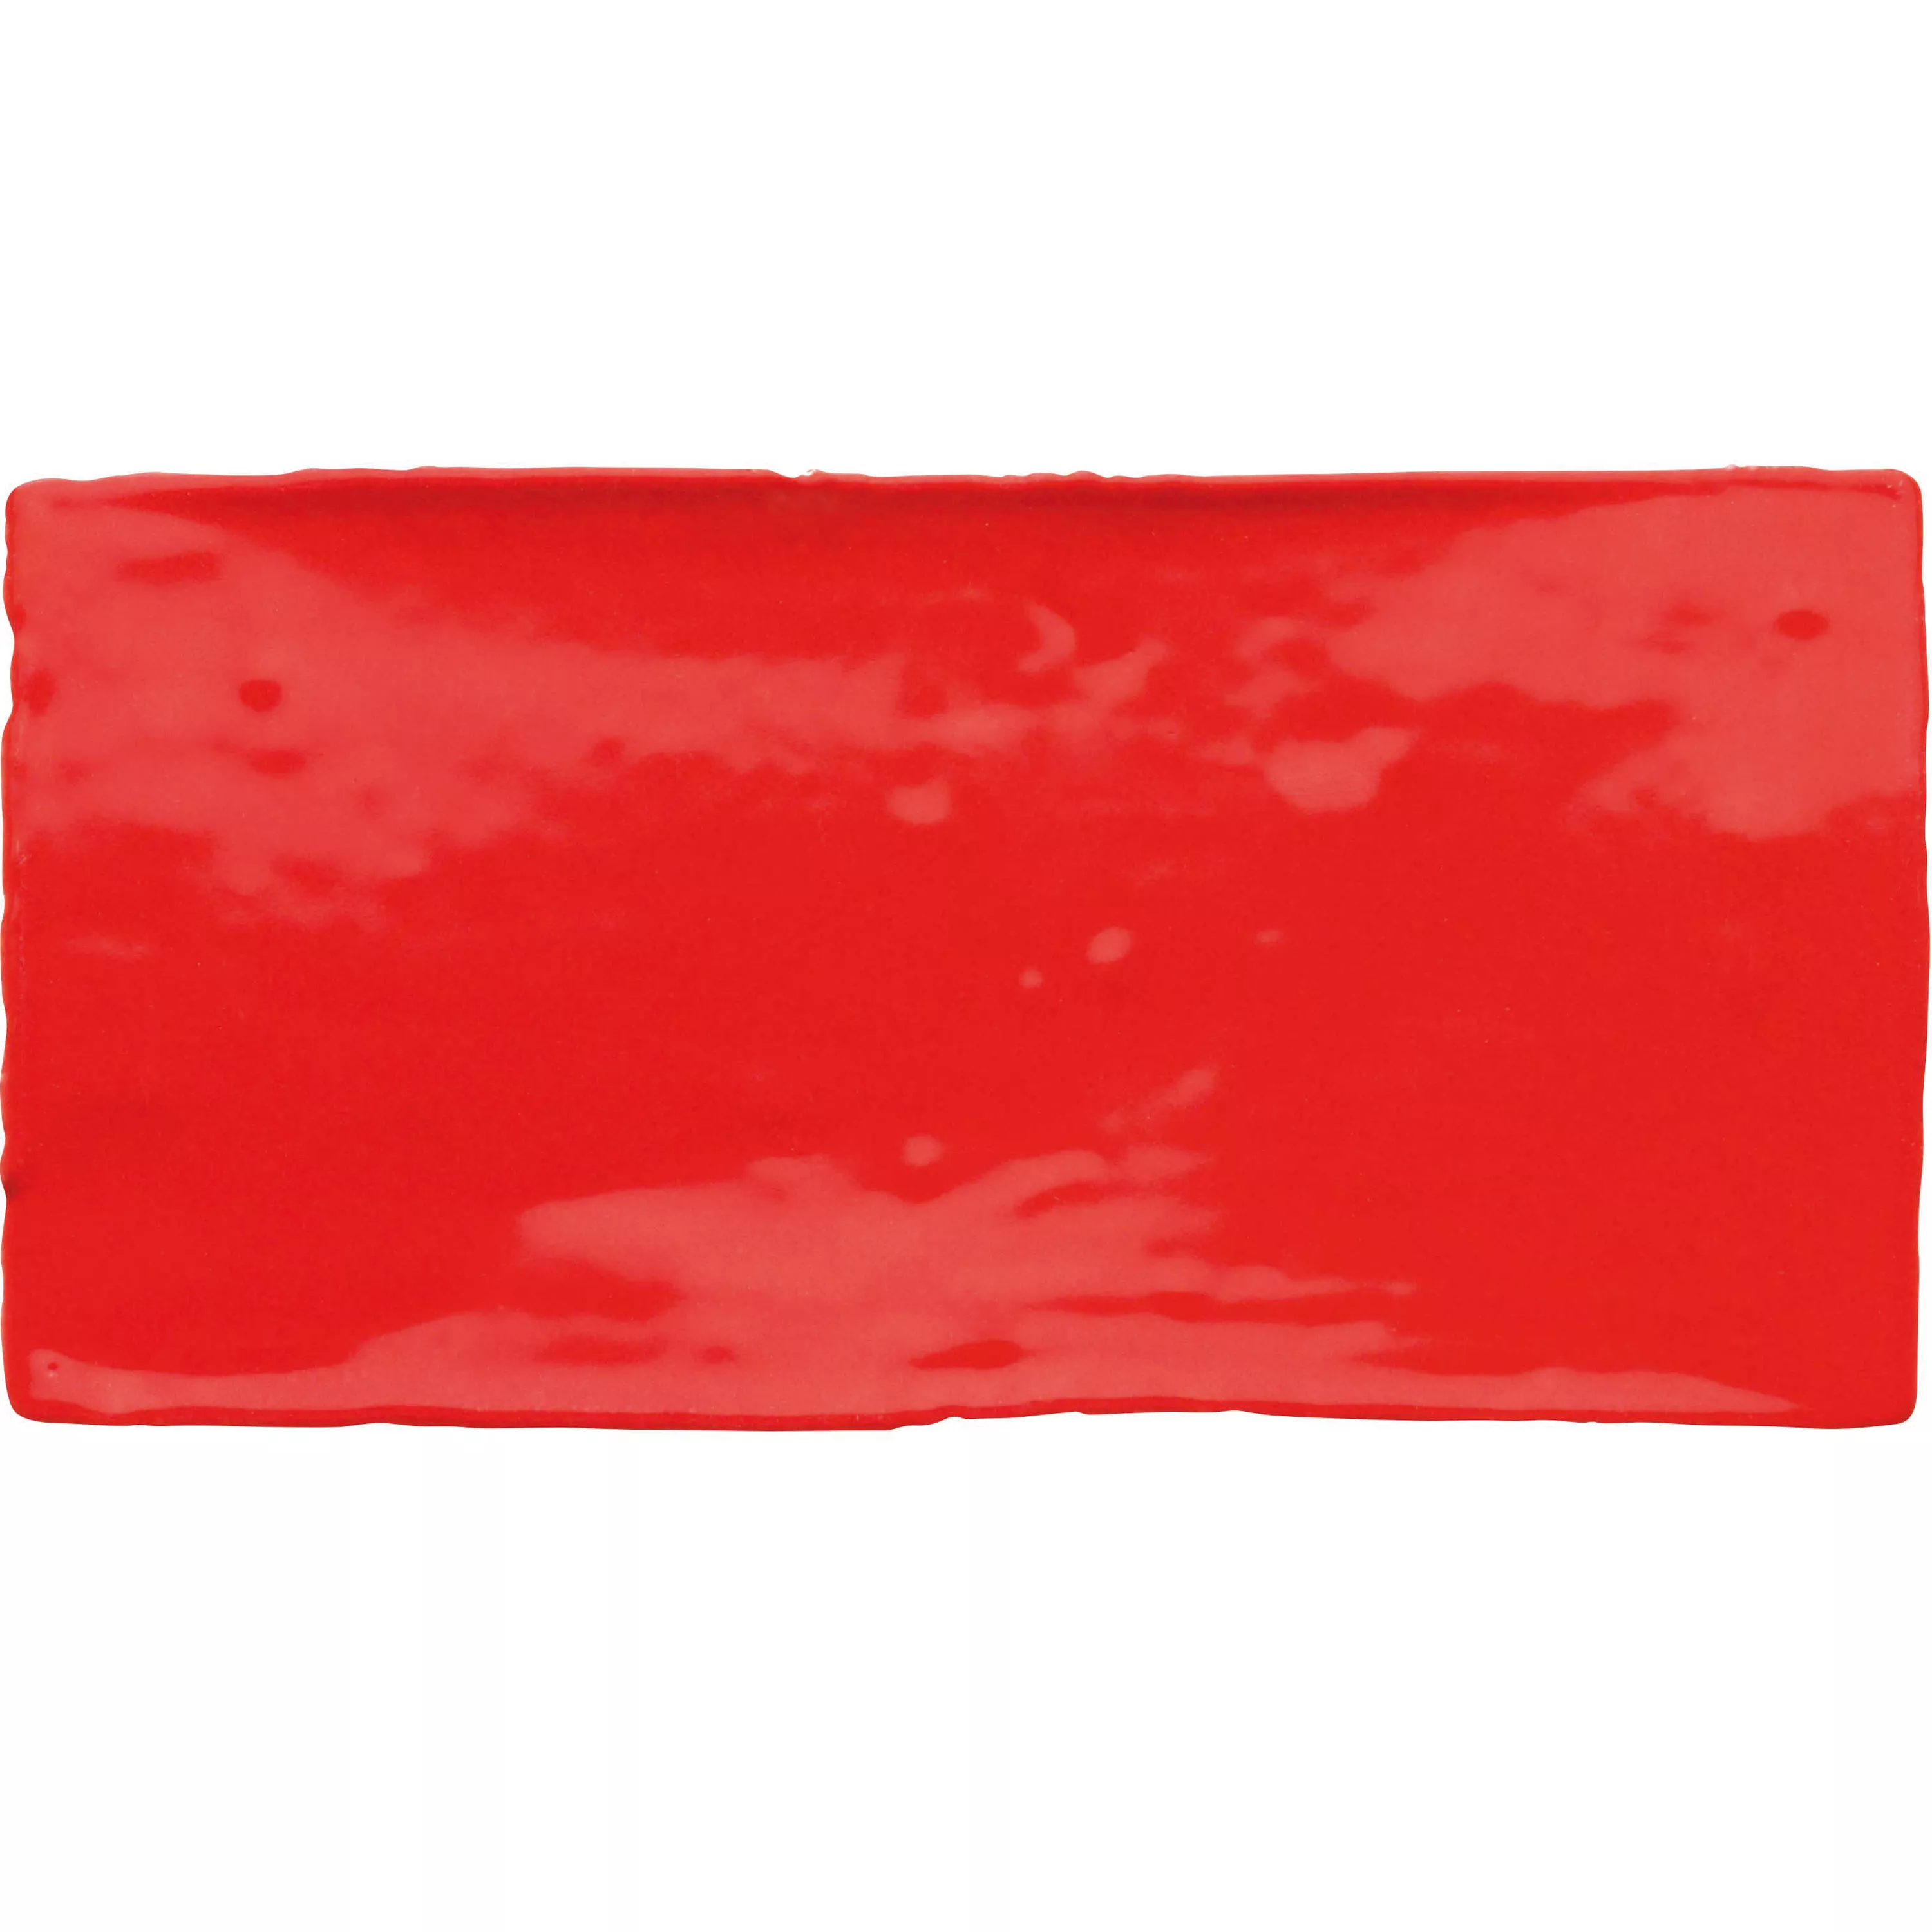 Azulejo Algier Feito à Mão 7,5x15cm Vermelho